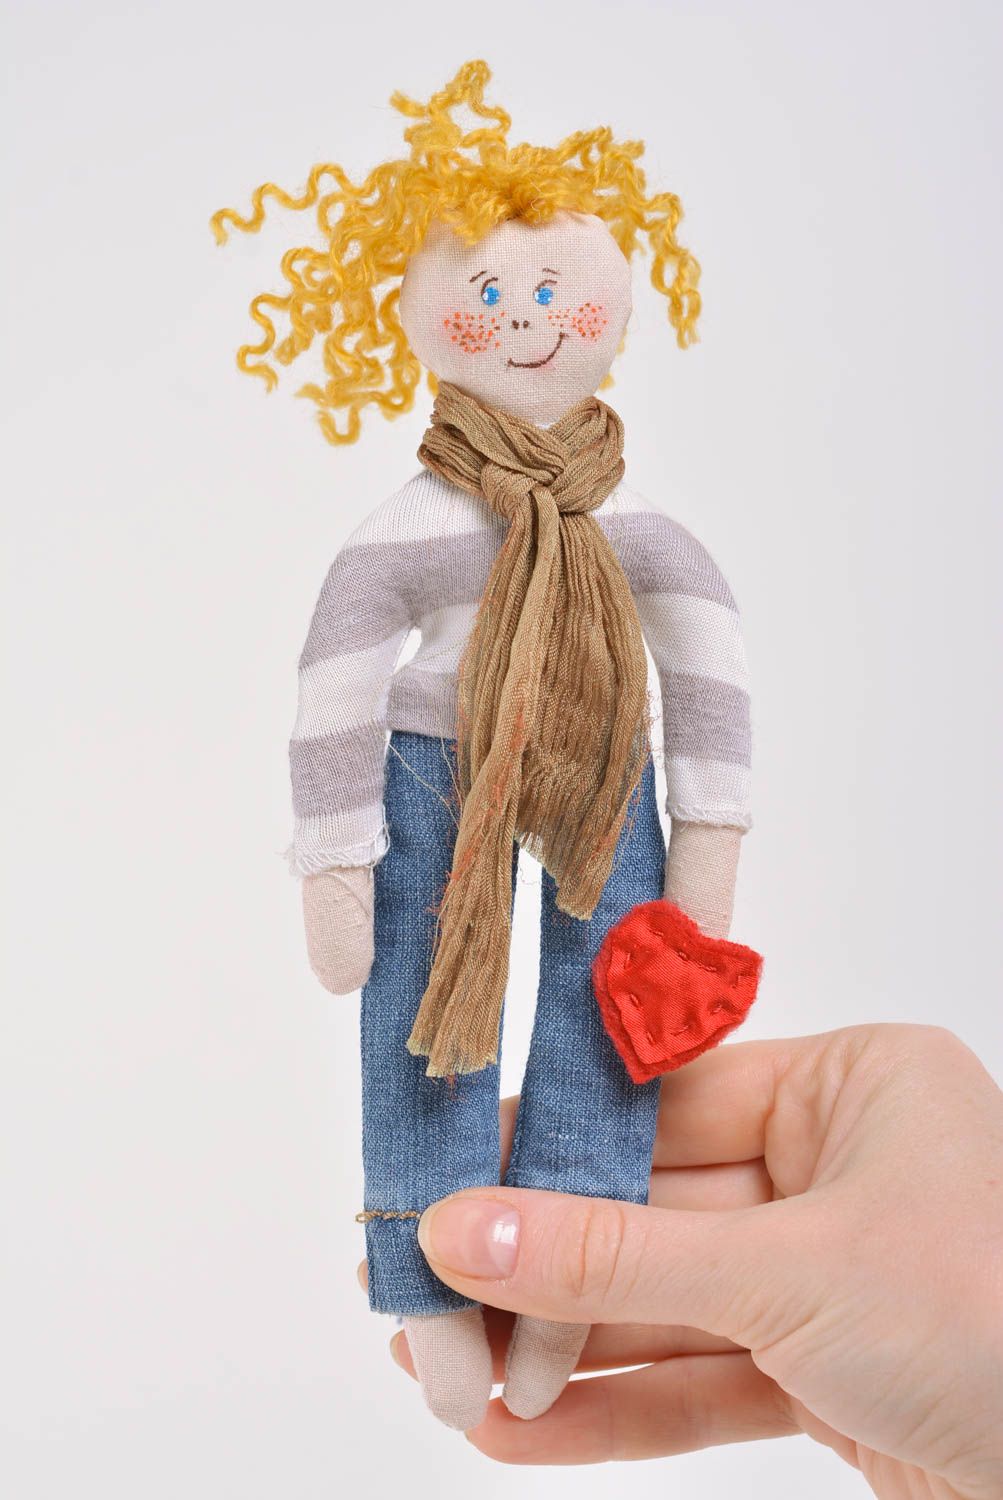 Spielzeug Puppe aus Stoff für Haus Interieur Junge Künstlerarbeit handmade foto 4